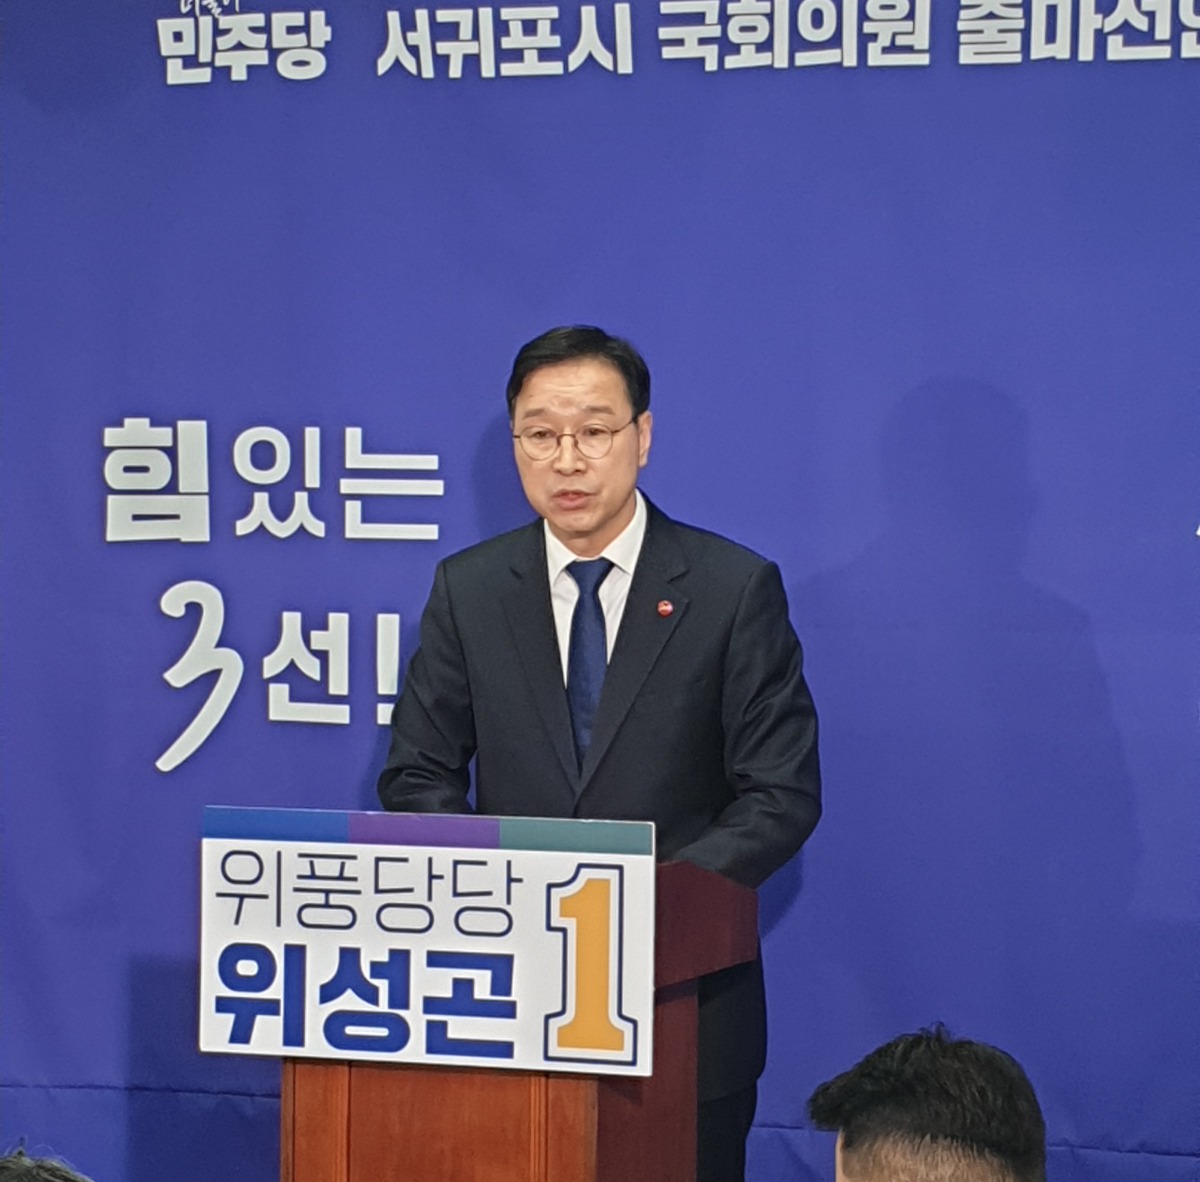 위성곤 제주도당위원장 제22대 국회의원선거 출마선언 기자회견